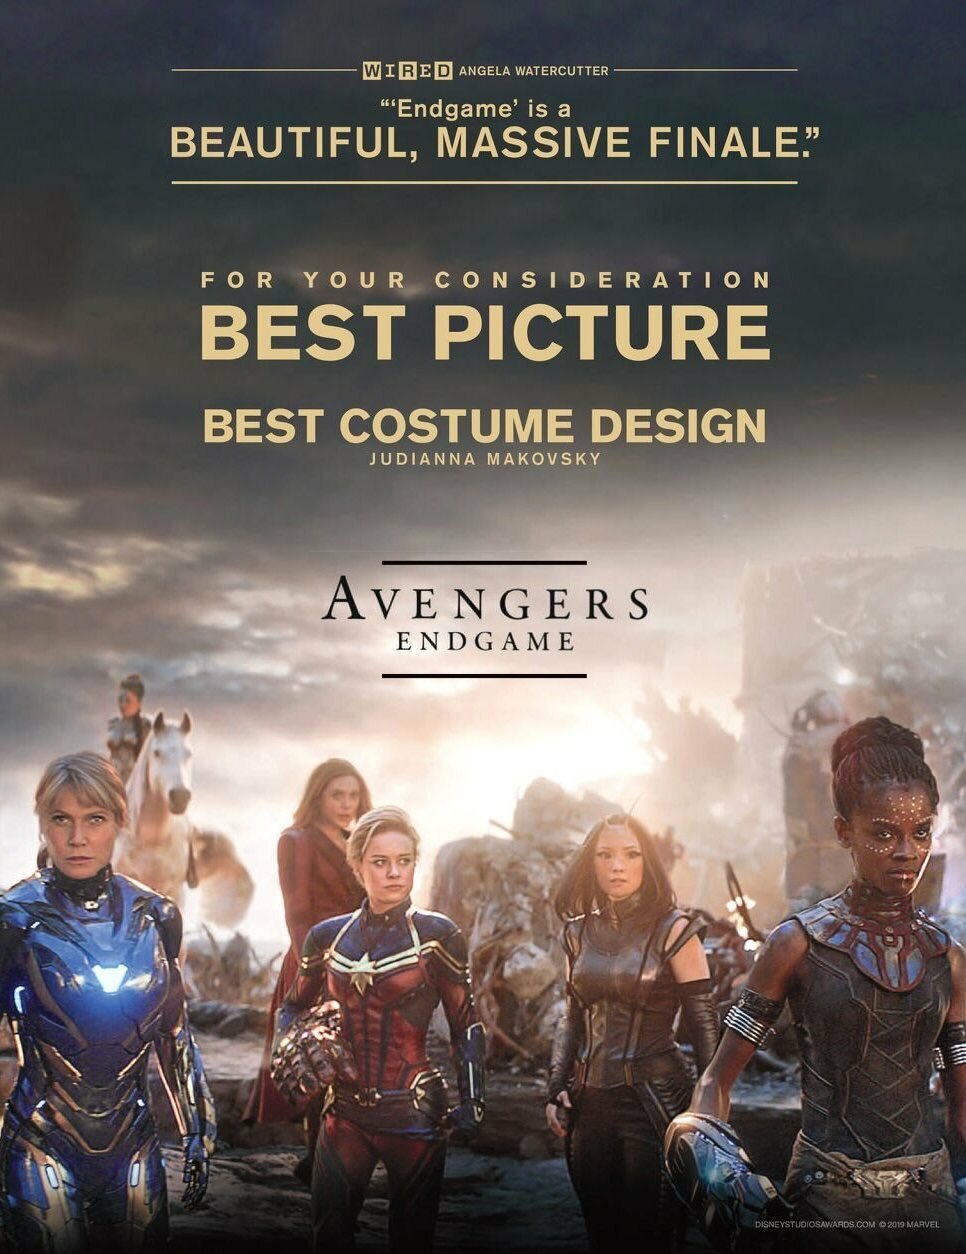 Il secondo poster di Avengers: Endgame per gli Oscar